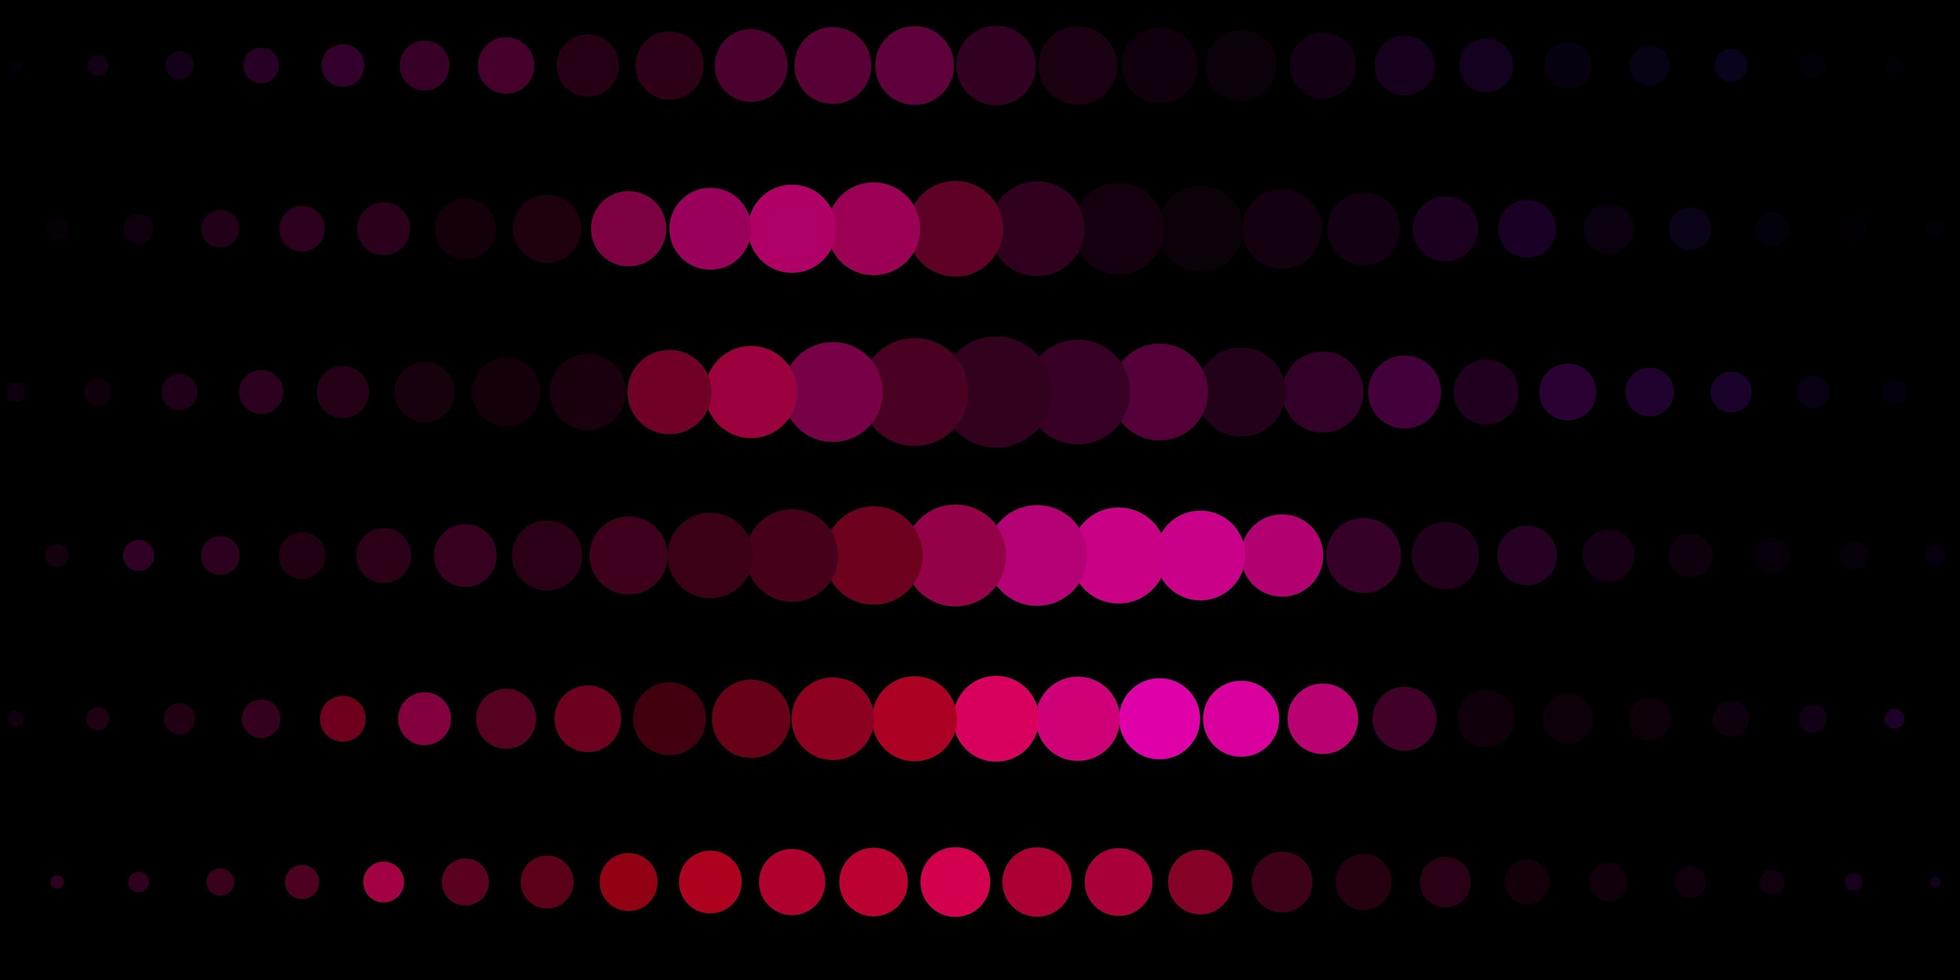 padrão de vetor roxo escuro com esferas.